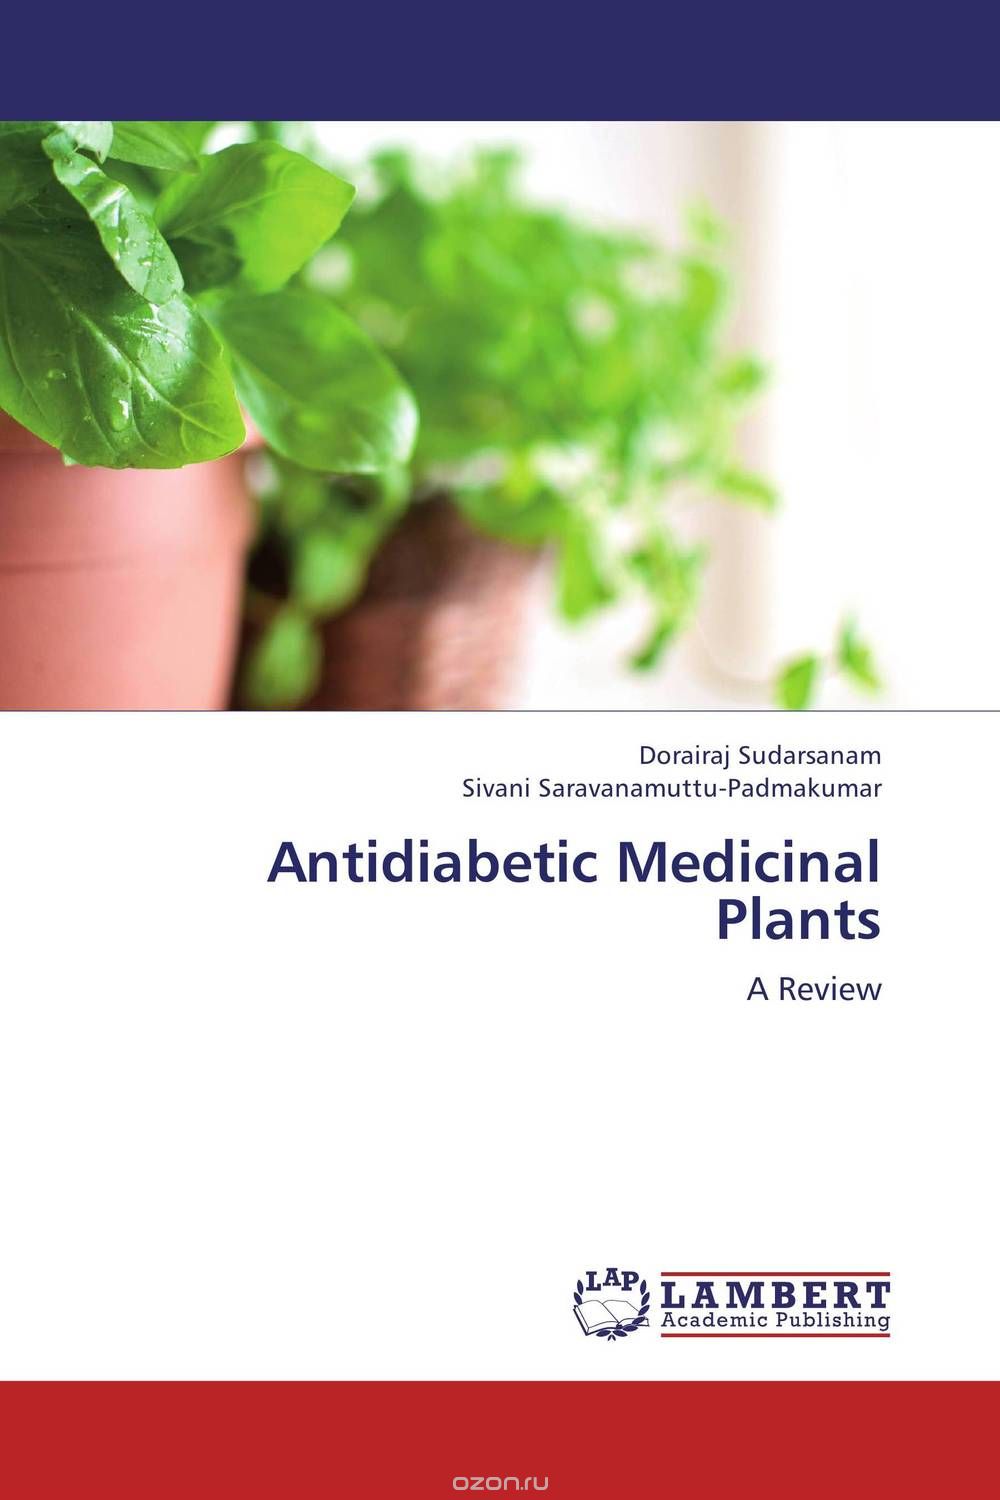 Скачать книгу "Antidiabetic Medicinal Plants"